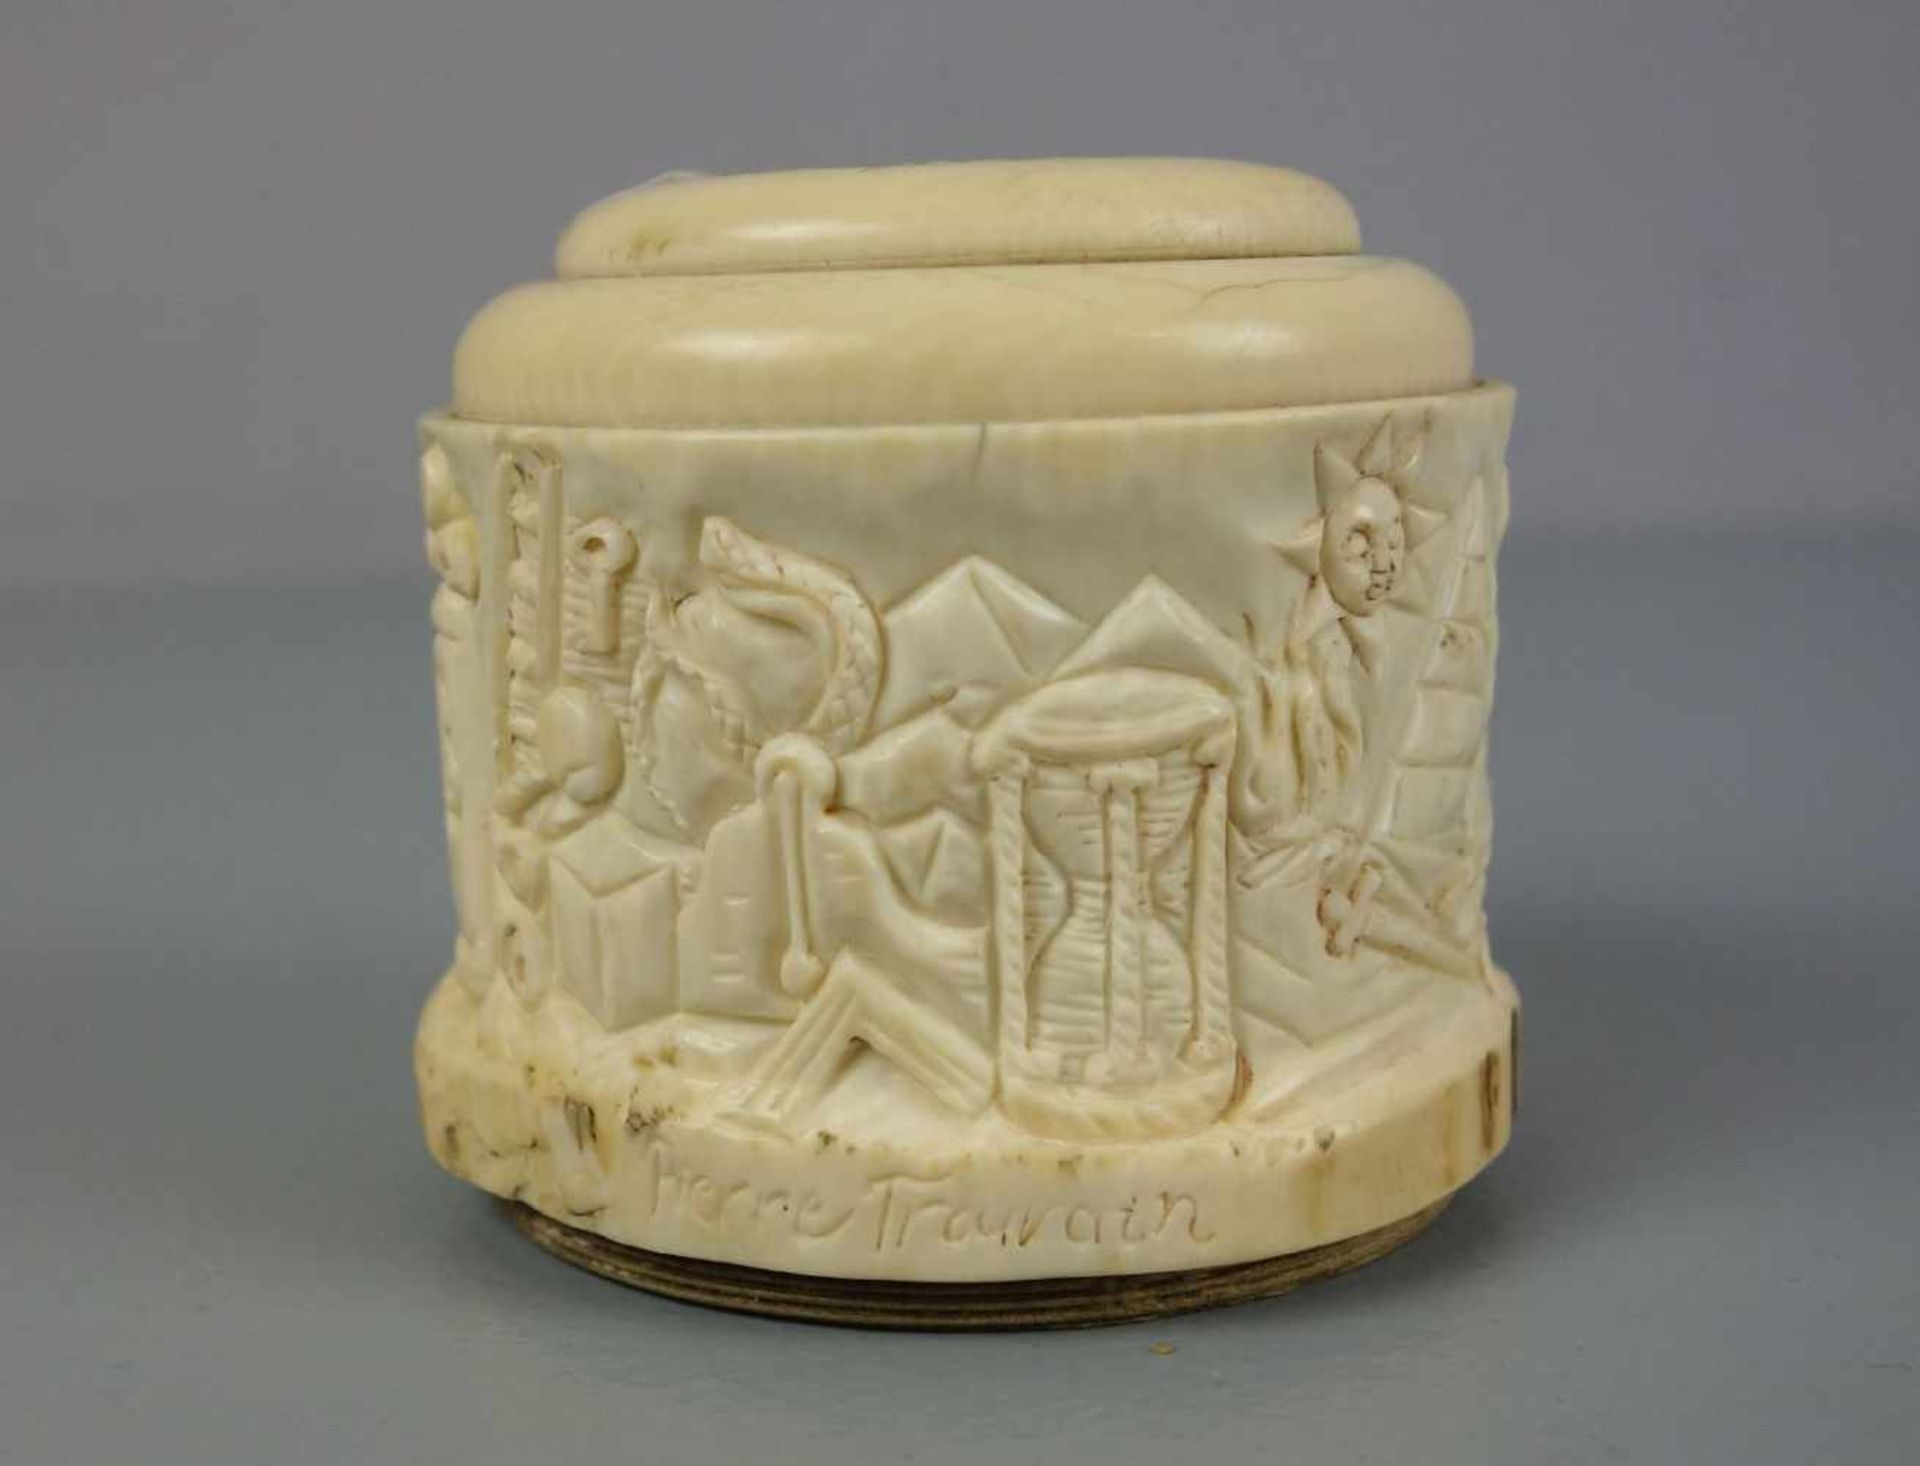 FREIMAURER SPARDOSE / masonic money box, 19. Jh., Elfenbein und Holz , Frankreich, datiert "1839" - Bild 4 aus 5